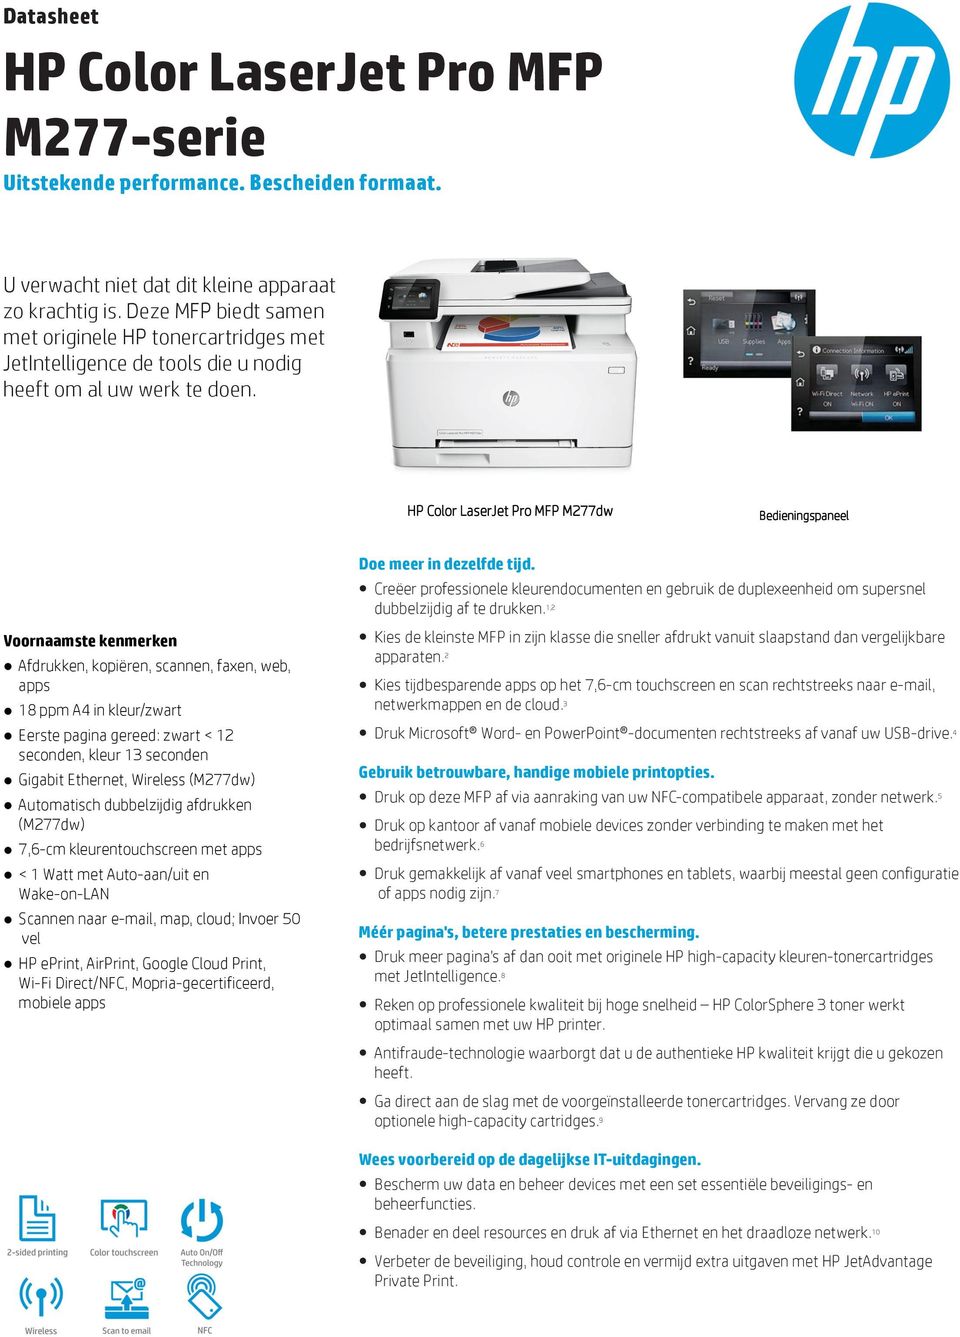 HP Color LaserJet Pro MFP M277dw Bedieningspaneel Voornaamste kenmerken Afdrukken, kopiëren, scannen, faxen, web, apps 18 ppm A4 in kleur/zwart Eerste pagina gereed: zwart < 12 seconden, kleur 13